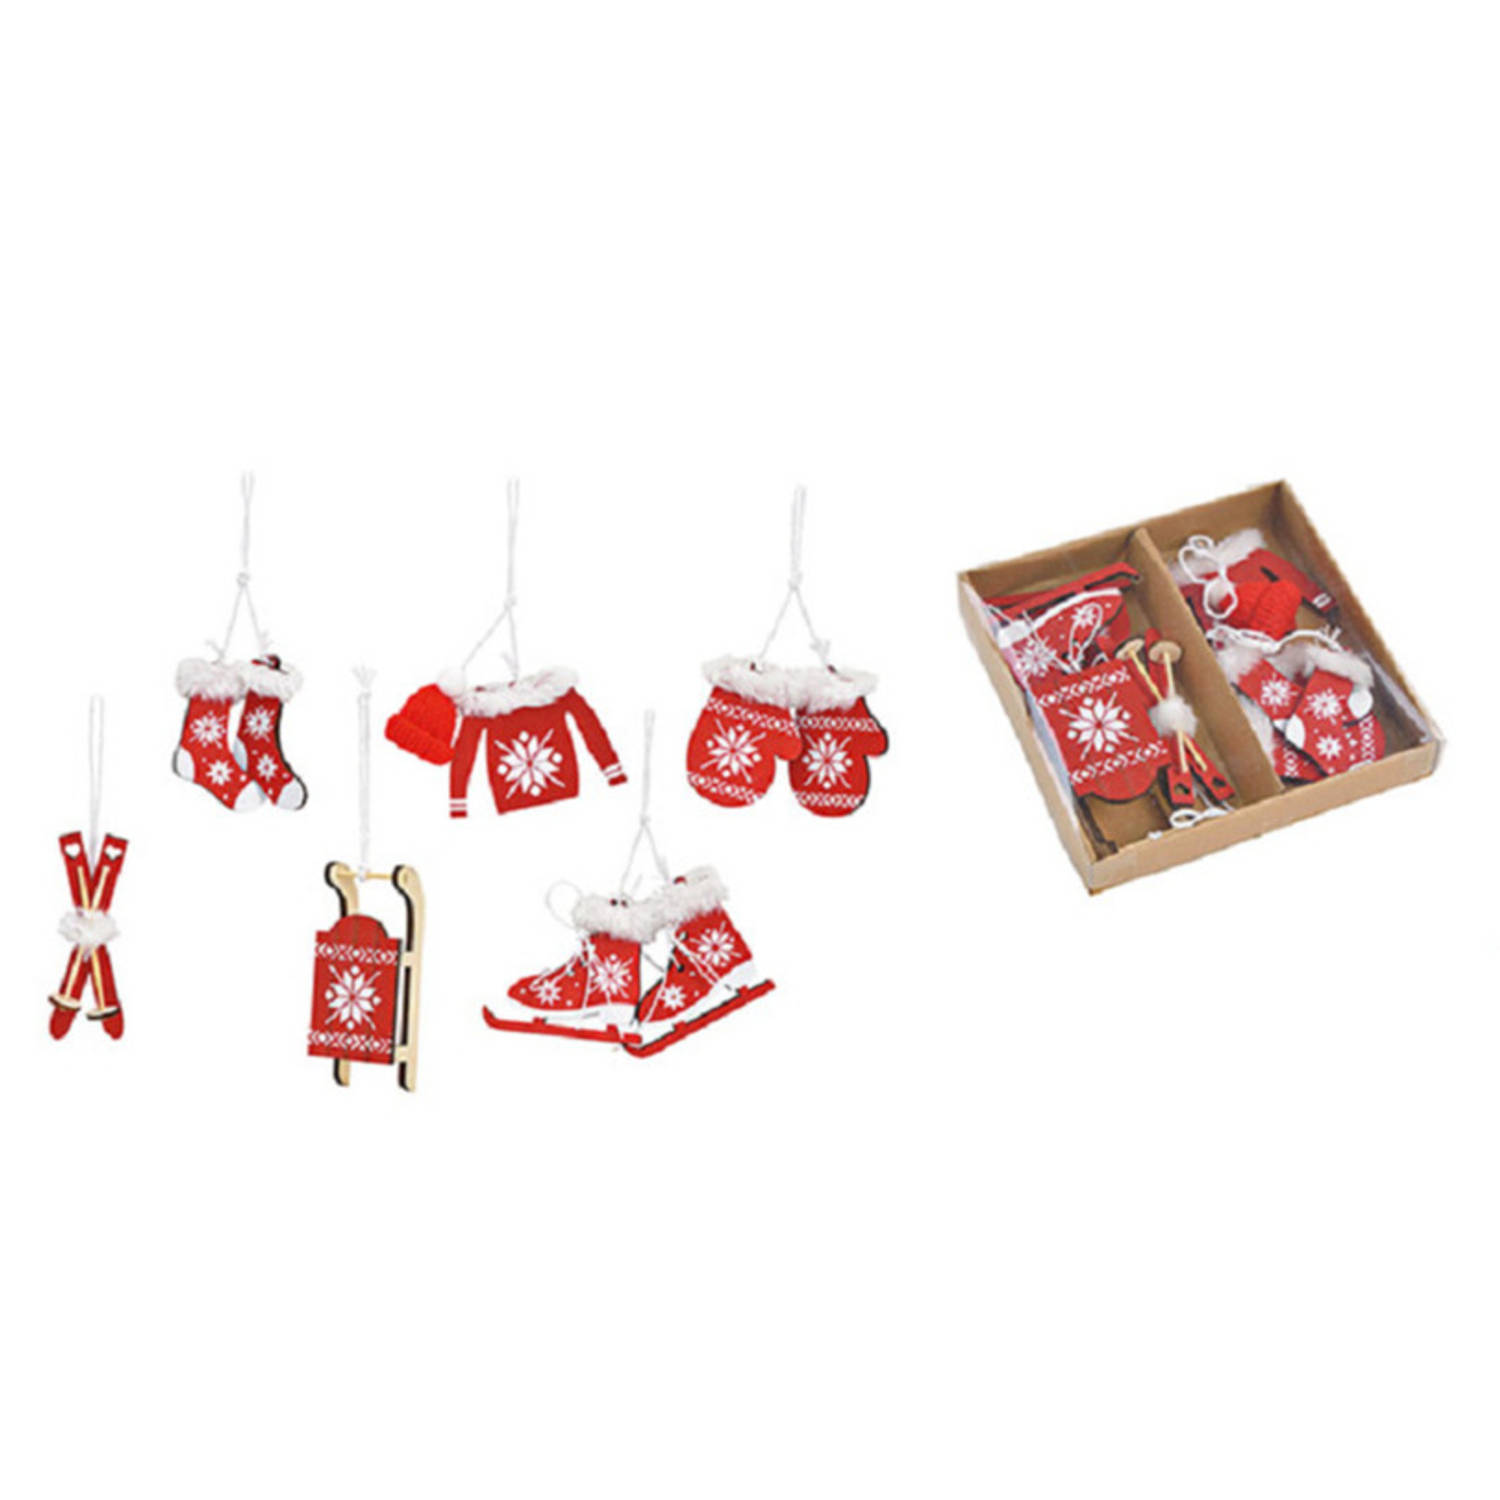 6x stuks houten kersthangers rood/wit wintersport thema kerstboomversiering - Kersthangers